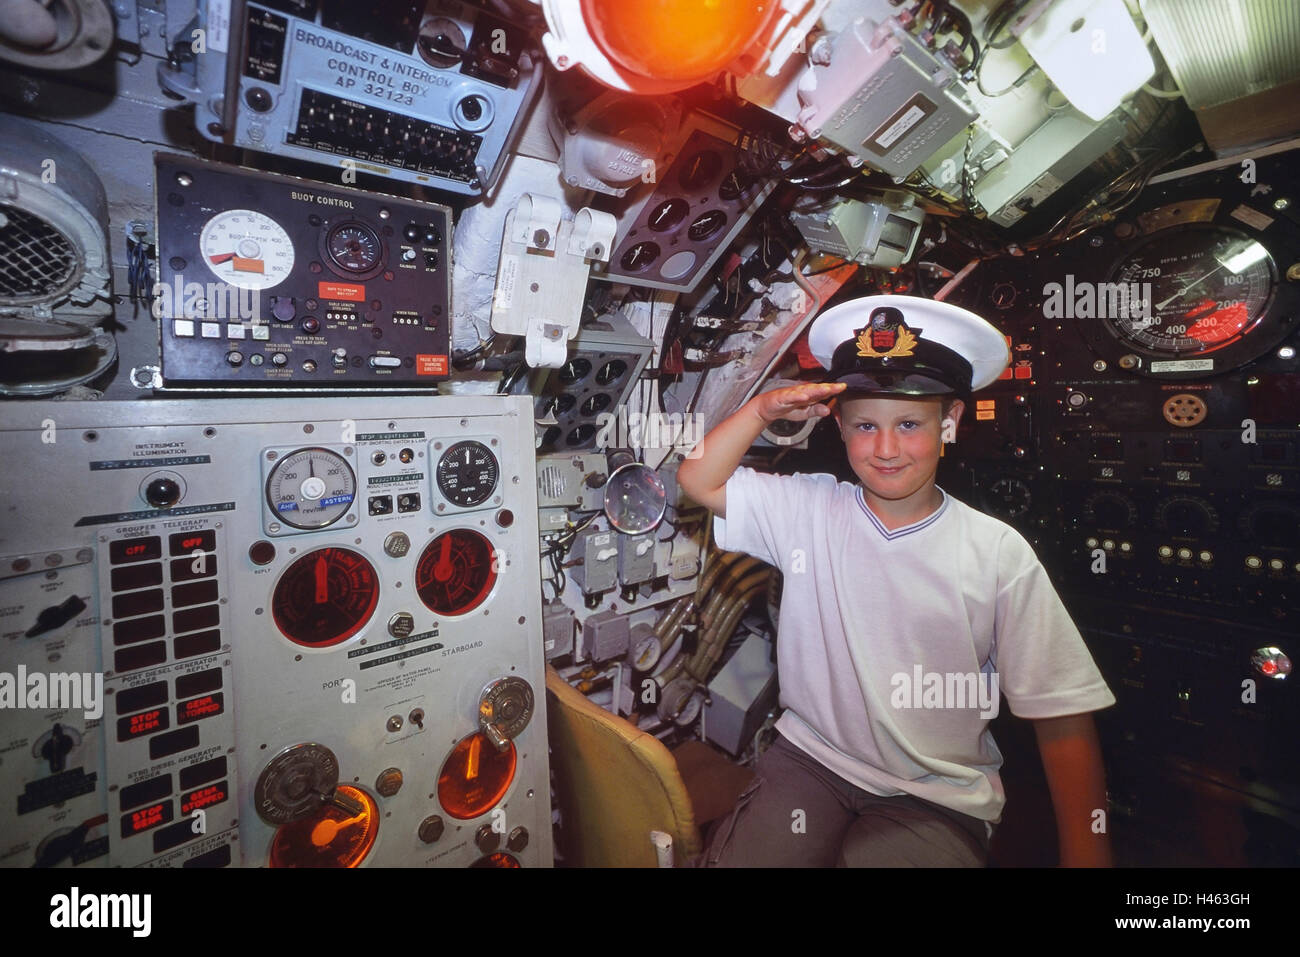 Jeune garçon portant un cap de pointe d'officier de la Marine saluant depuis le Helm de la station pilote à bord du sous-marin de classe Oberon HMS Ocelot. HM sous-marin ocelot Banque D'Images